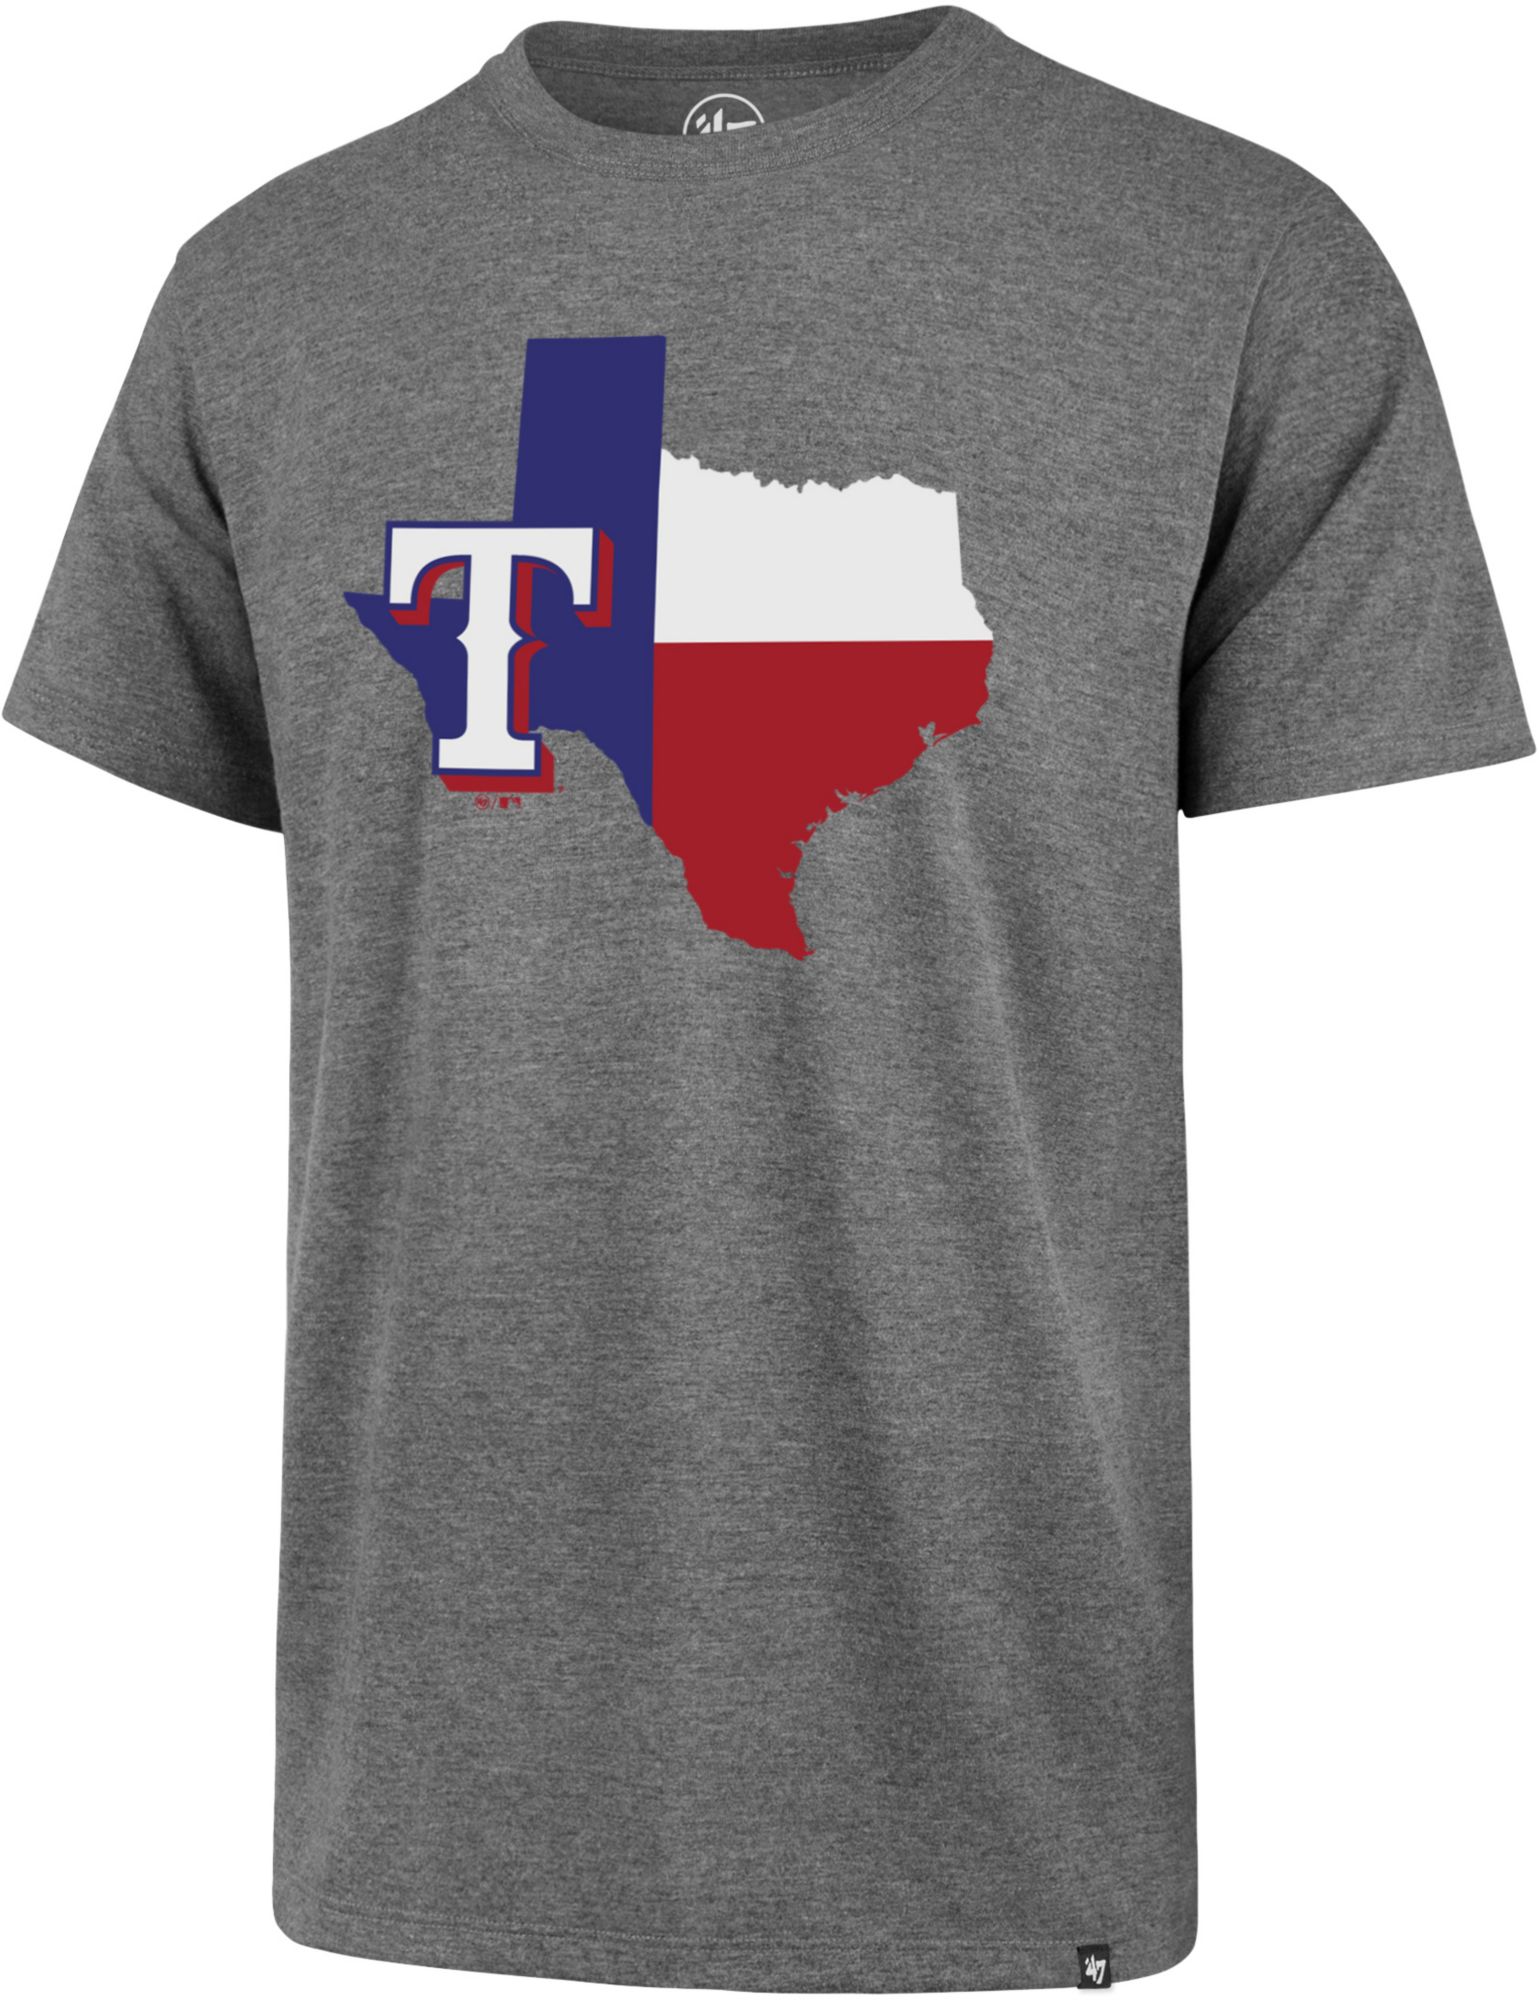 texas rangers t shirt dress